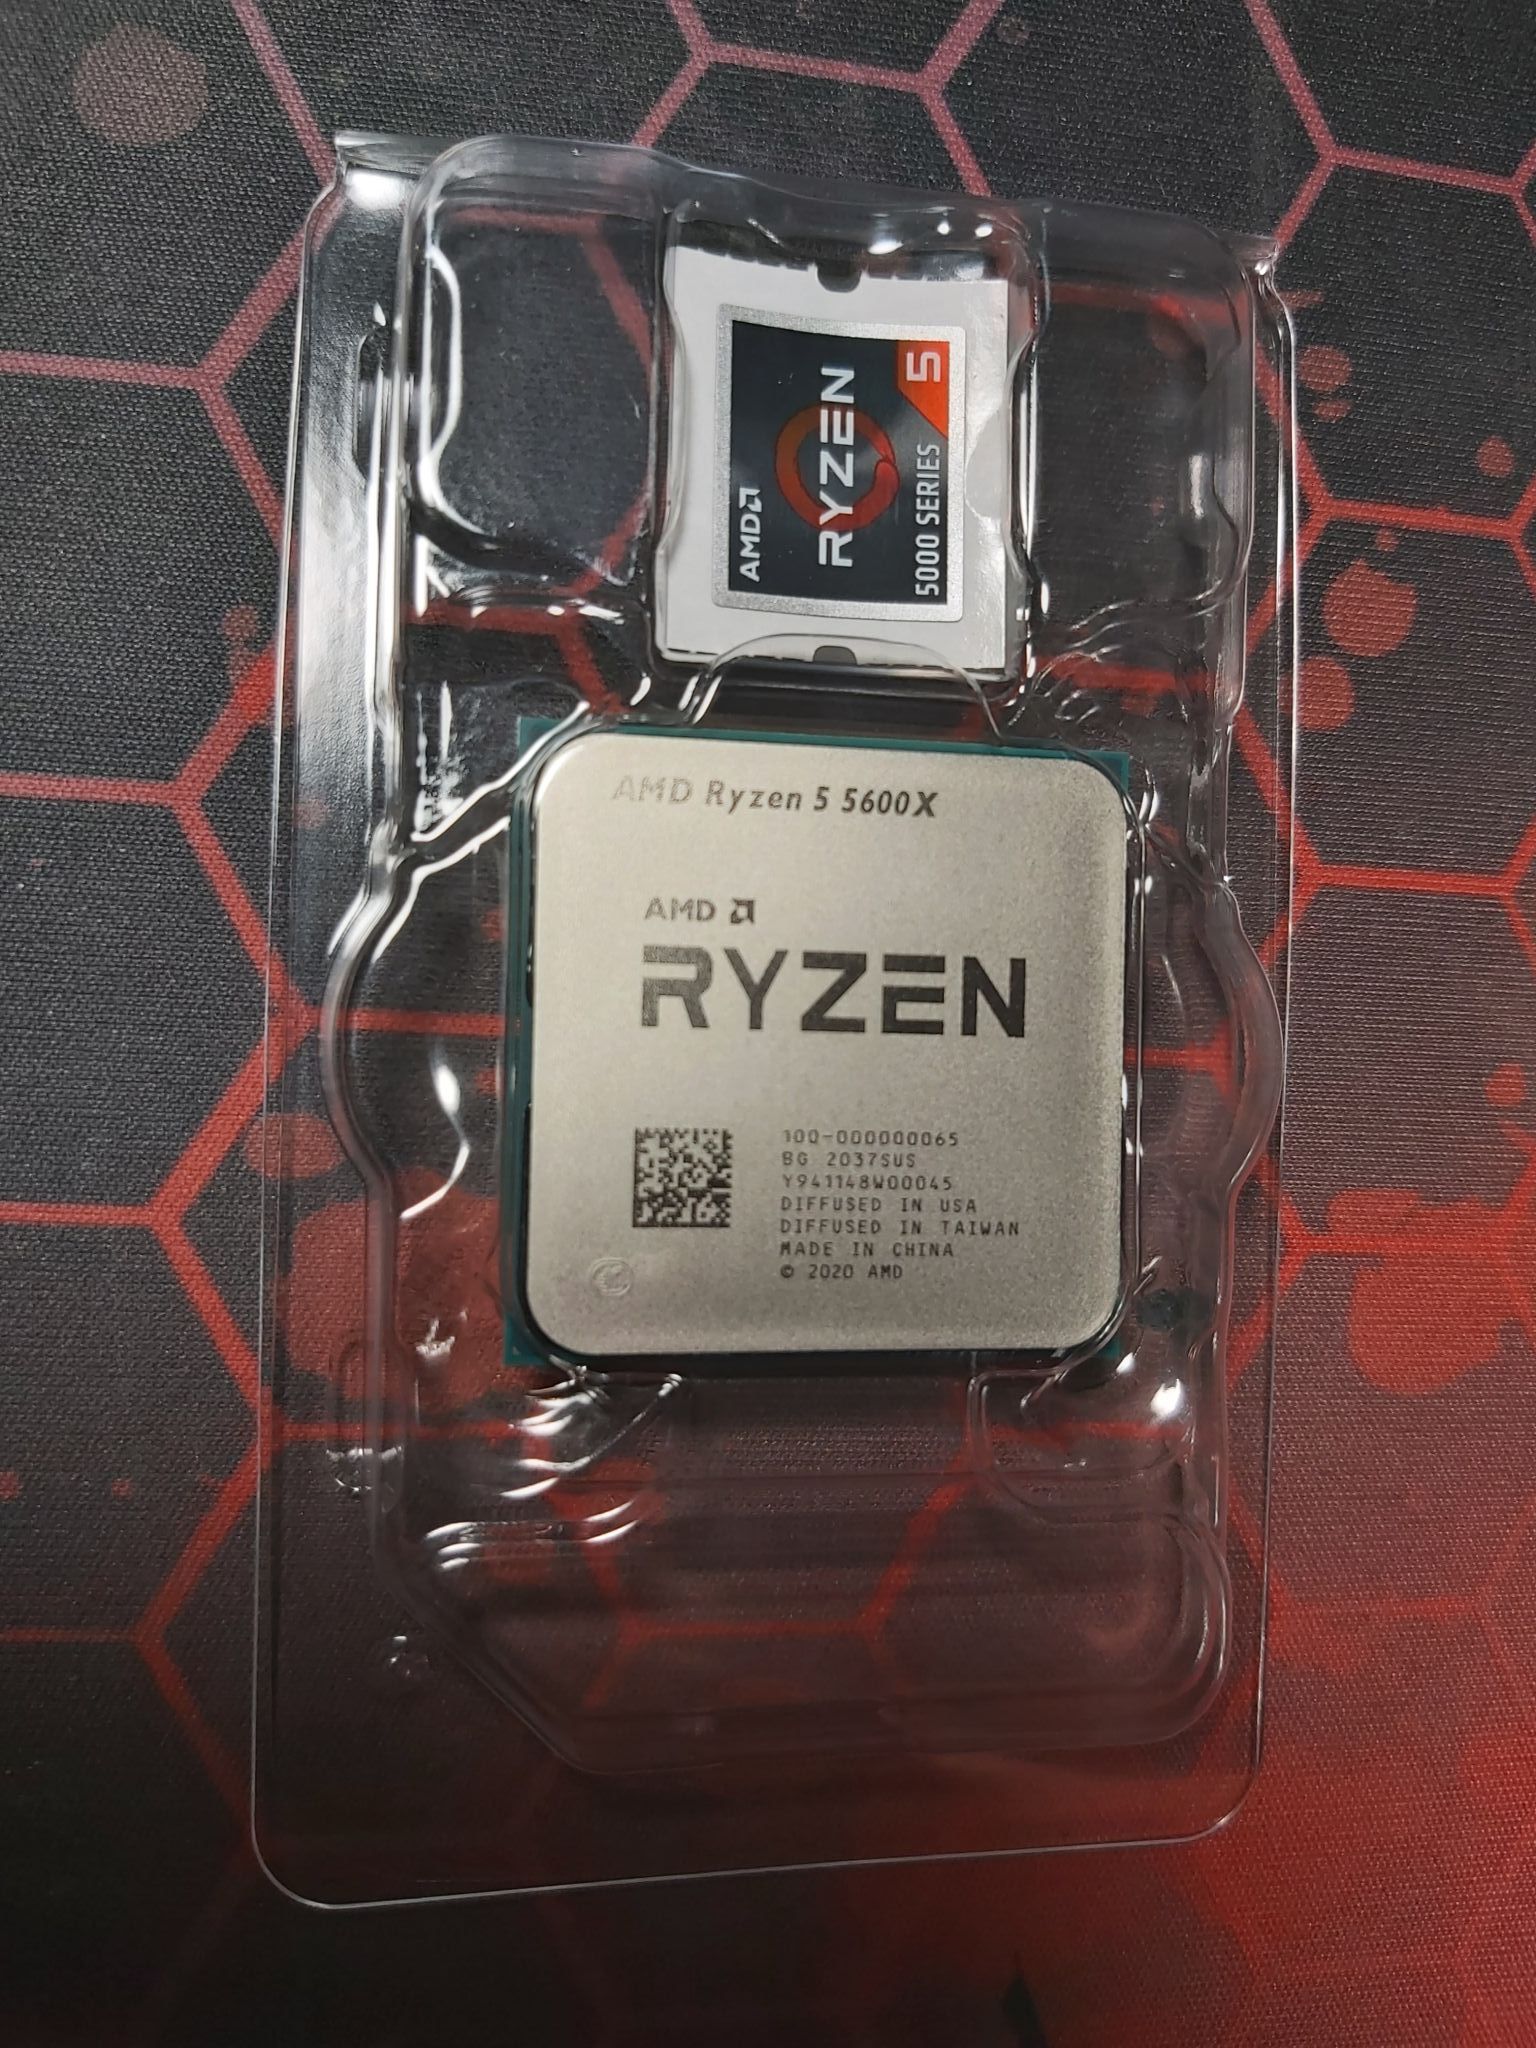 Amd ryzen 5 5600g цены. Ryzen 5 5600g. Процессор Ryzen 5600x. Процессор AMD Ryzen 5 5600x OEM am4 Vermeer 100-000000065. Процессор AMD Ryzen 5 5600g Box.